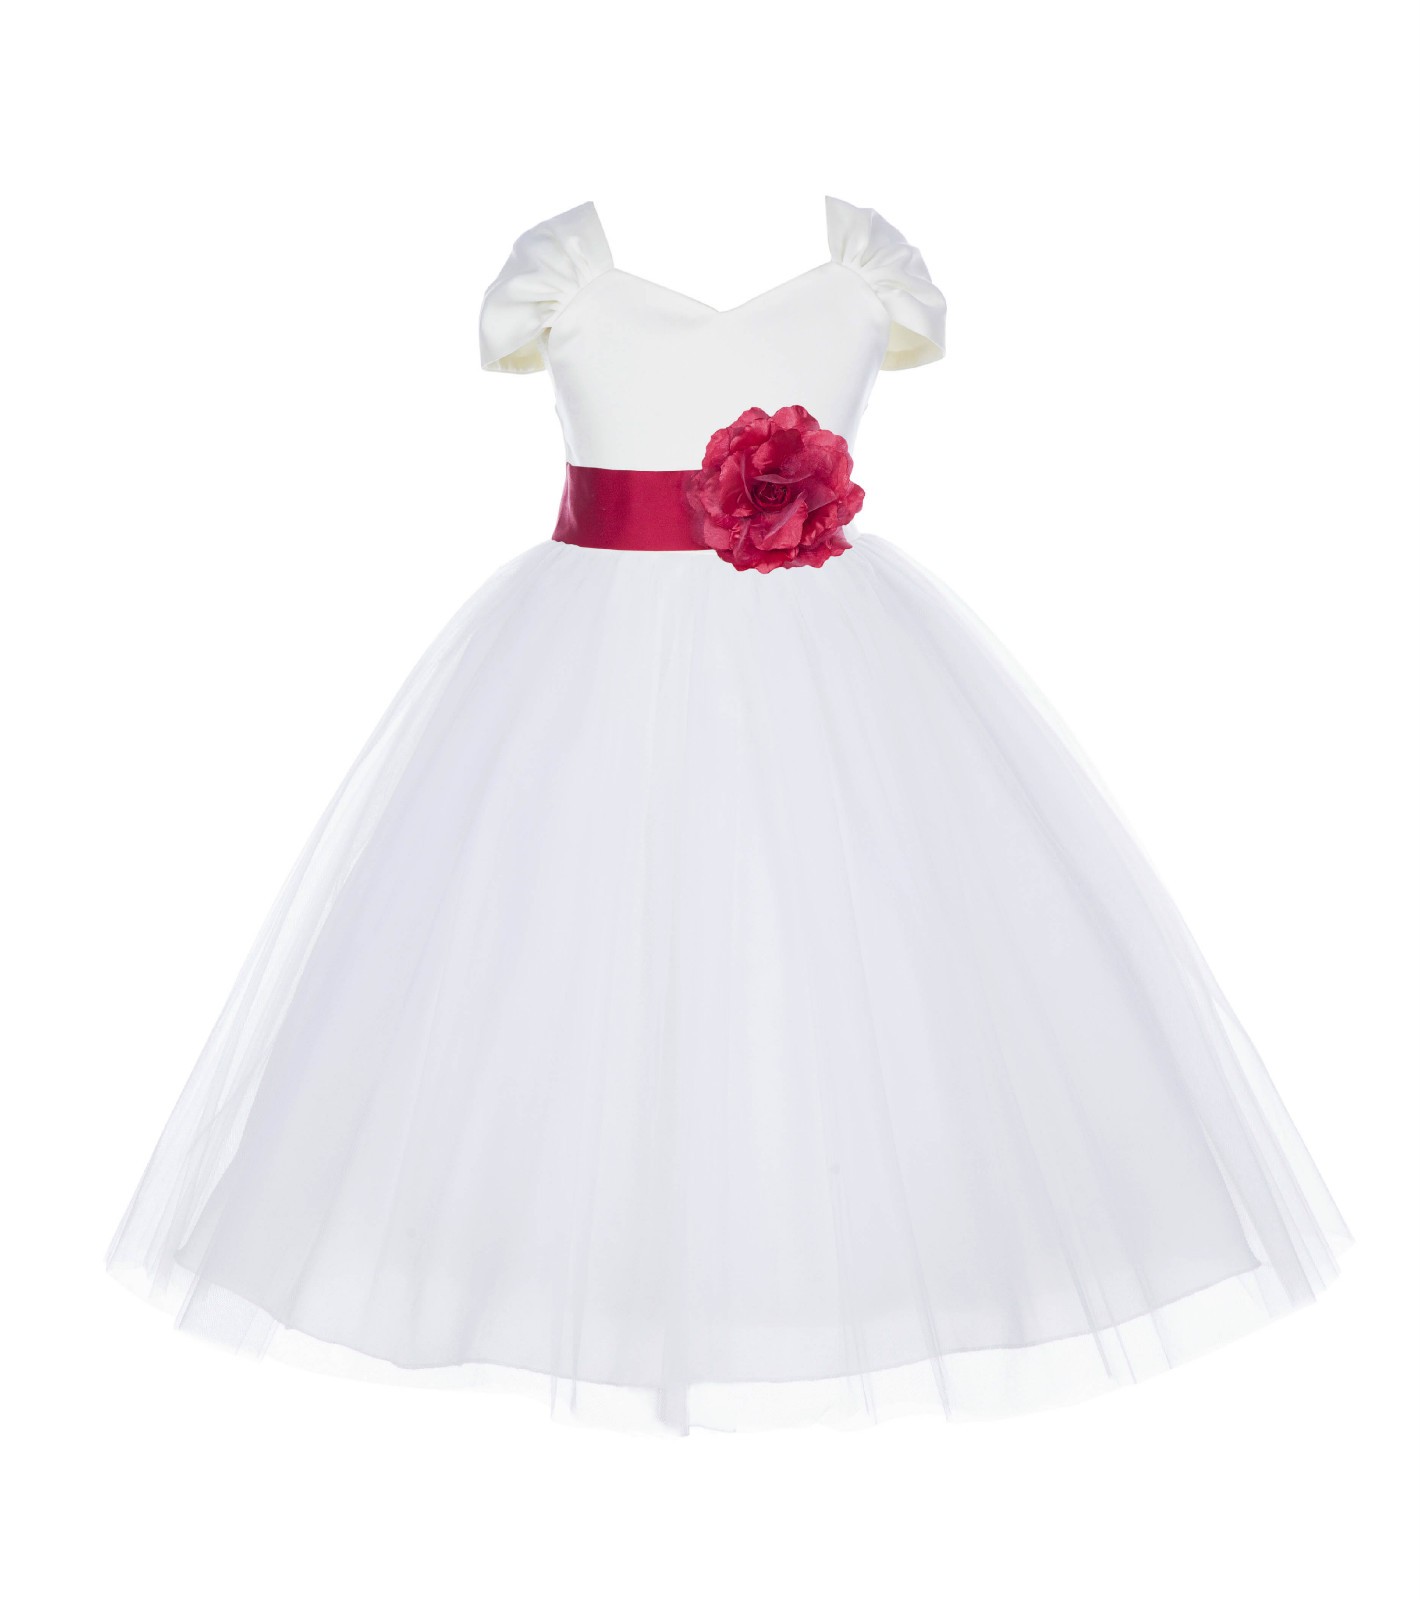 Ivory/Cherry V-shaped Neckline Short Sleeves Tulle Flower Girl Dress 154S